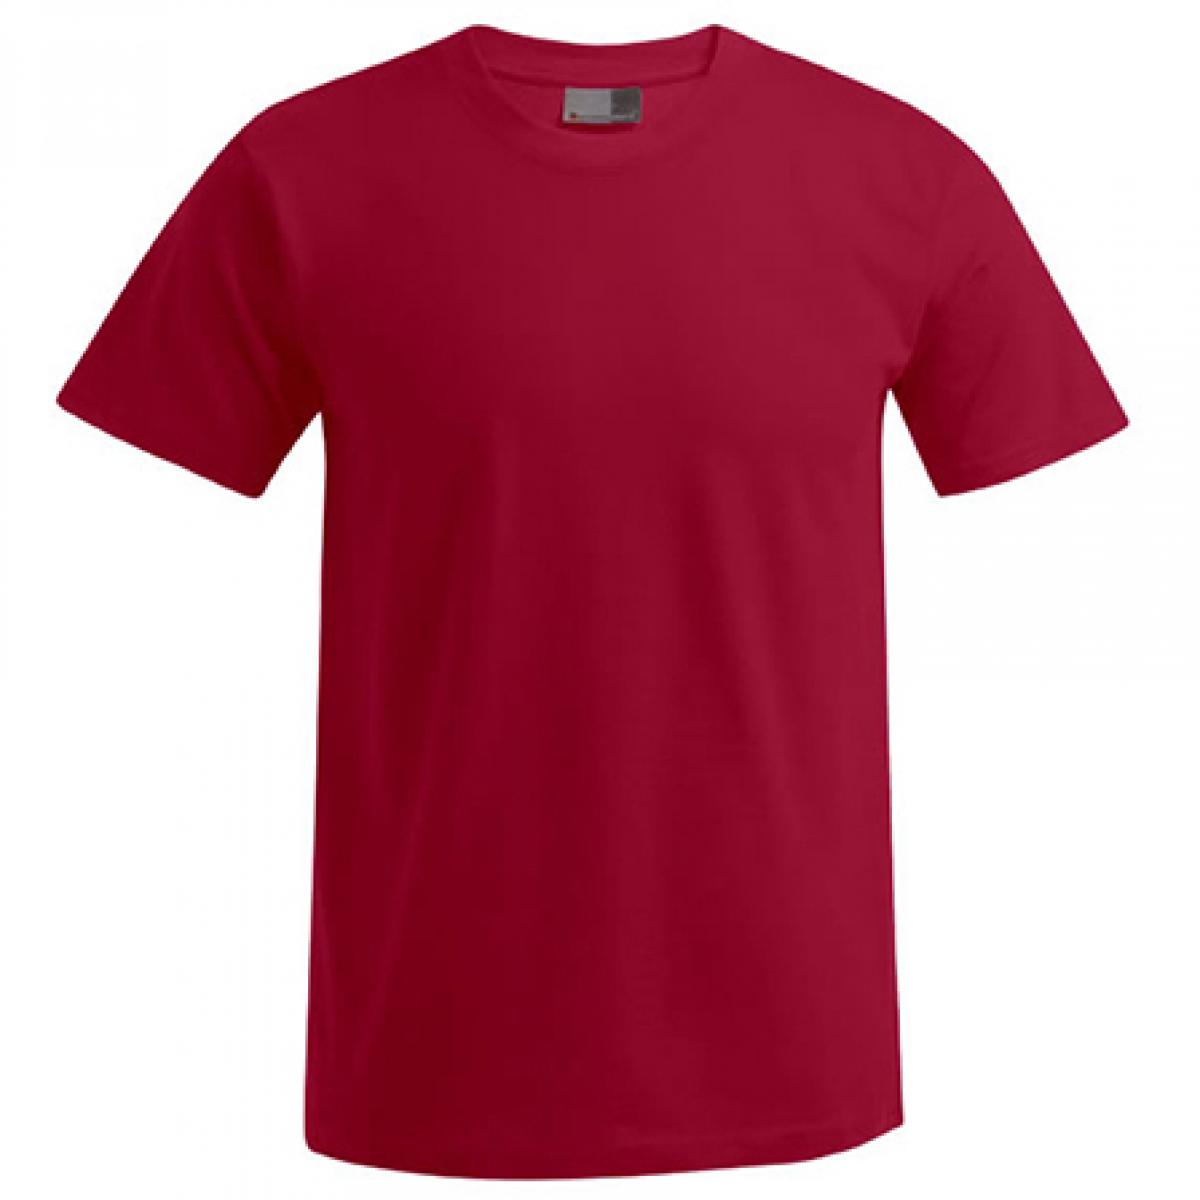 Hersteller: Promodoro Herstellernummer: 3000/3099 Artikelbezeichnung: Men´s Premium Herren T-Shirt - bis 5XL Farbe: Cherry Berry